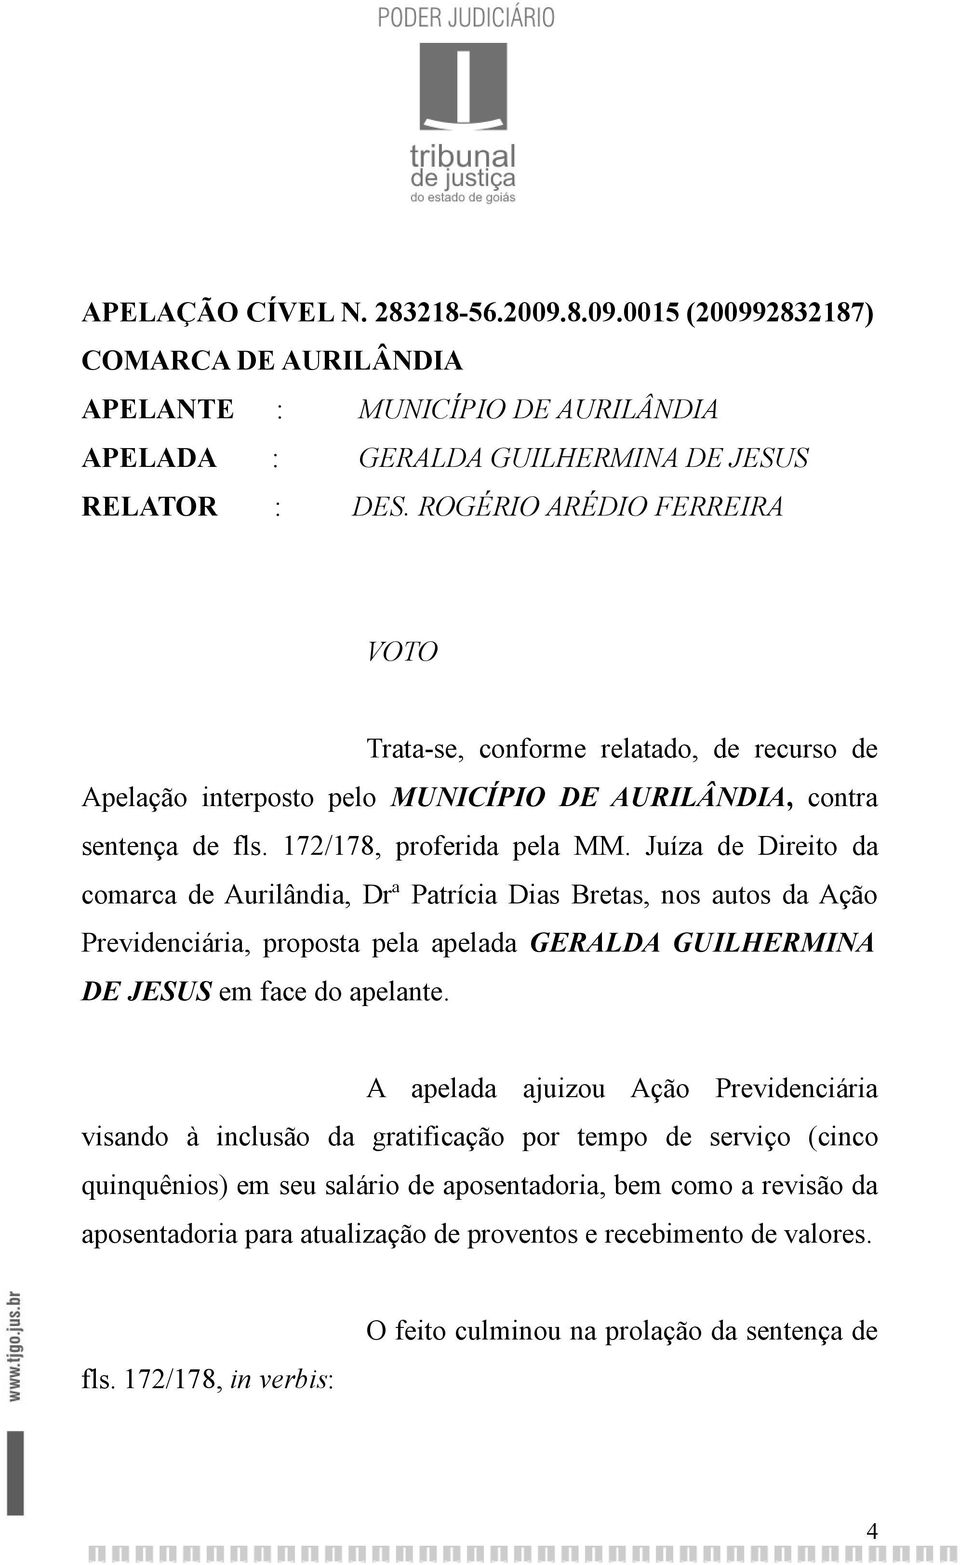 Juíza de Direito da comarca de Aurilândia, Drª Patrícia Dias Bretas, nos autos da Ação Previdenciária, proposta pela apelada GERALDA GUILHERMINA DE JESUS em face do apelante.